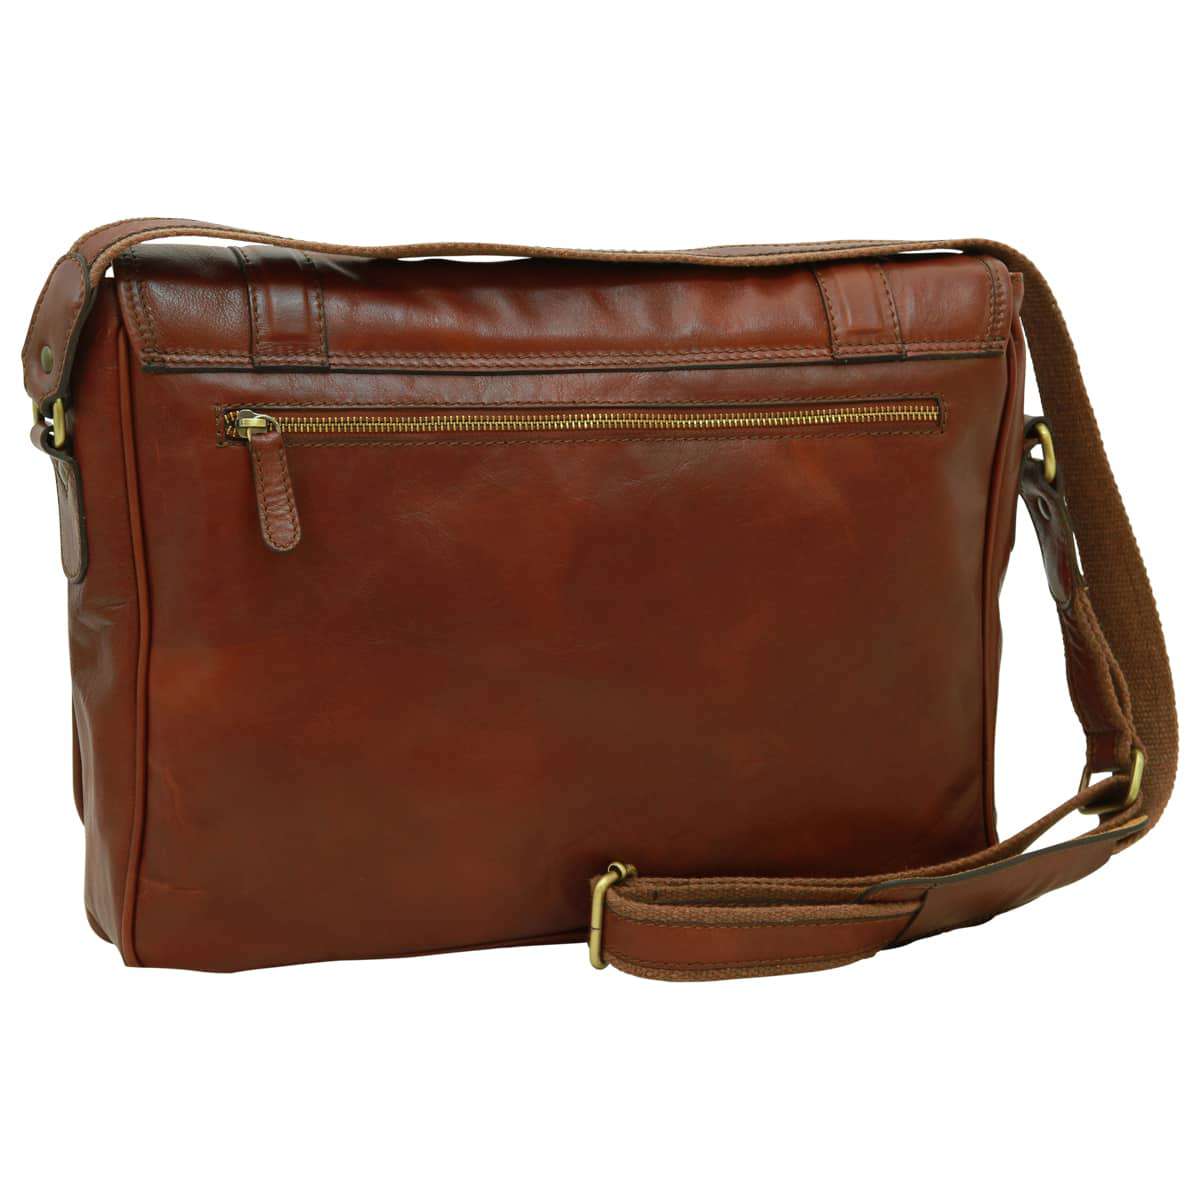 Soft Calfskin Leather Messenger Bag - Brown | 030491MA UK | Old Angler Firenze